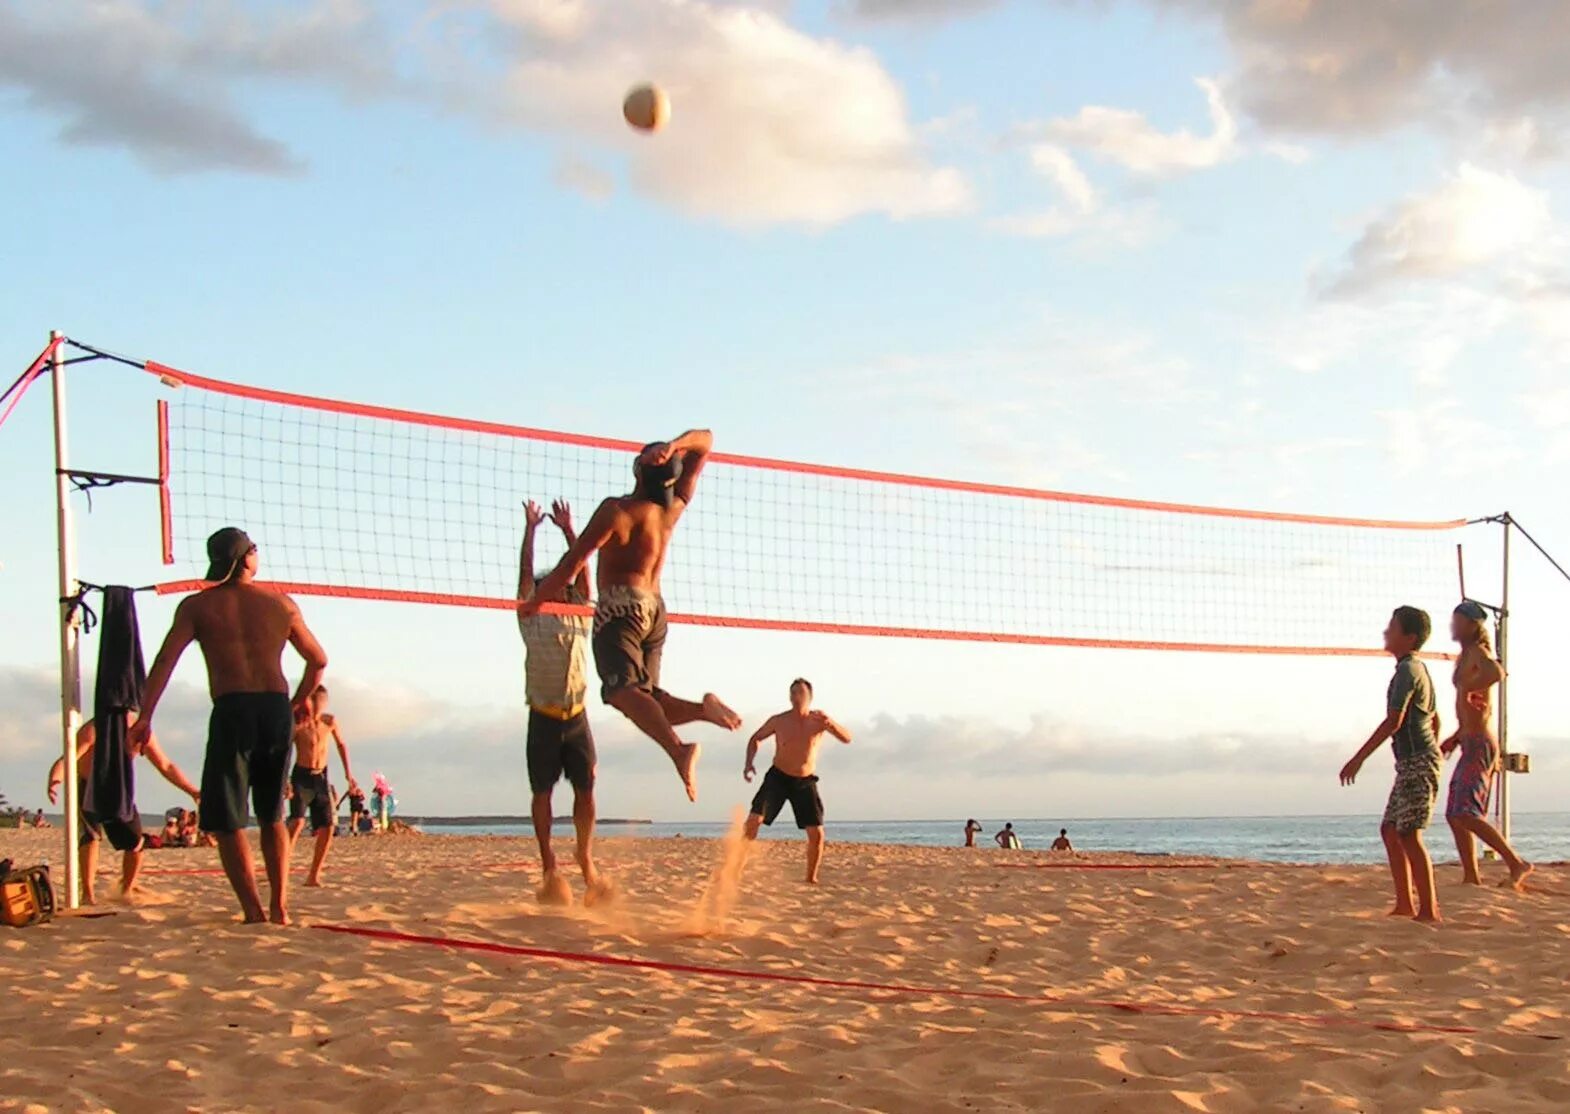 Пляжка волейбол. Волейбол на пляже. Пляжный волейбол спорт. Спортивные игры фотографии